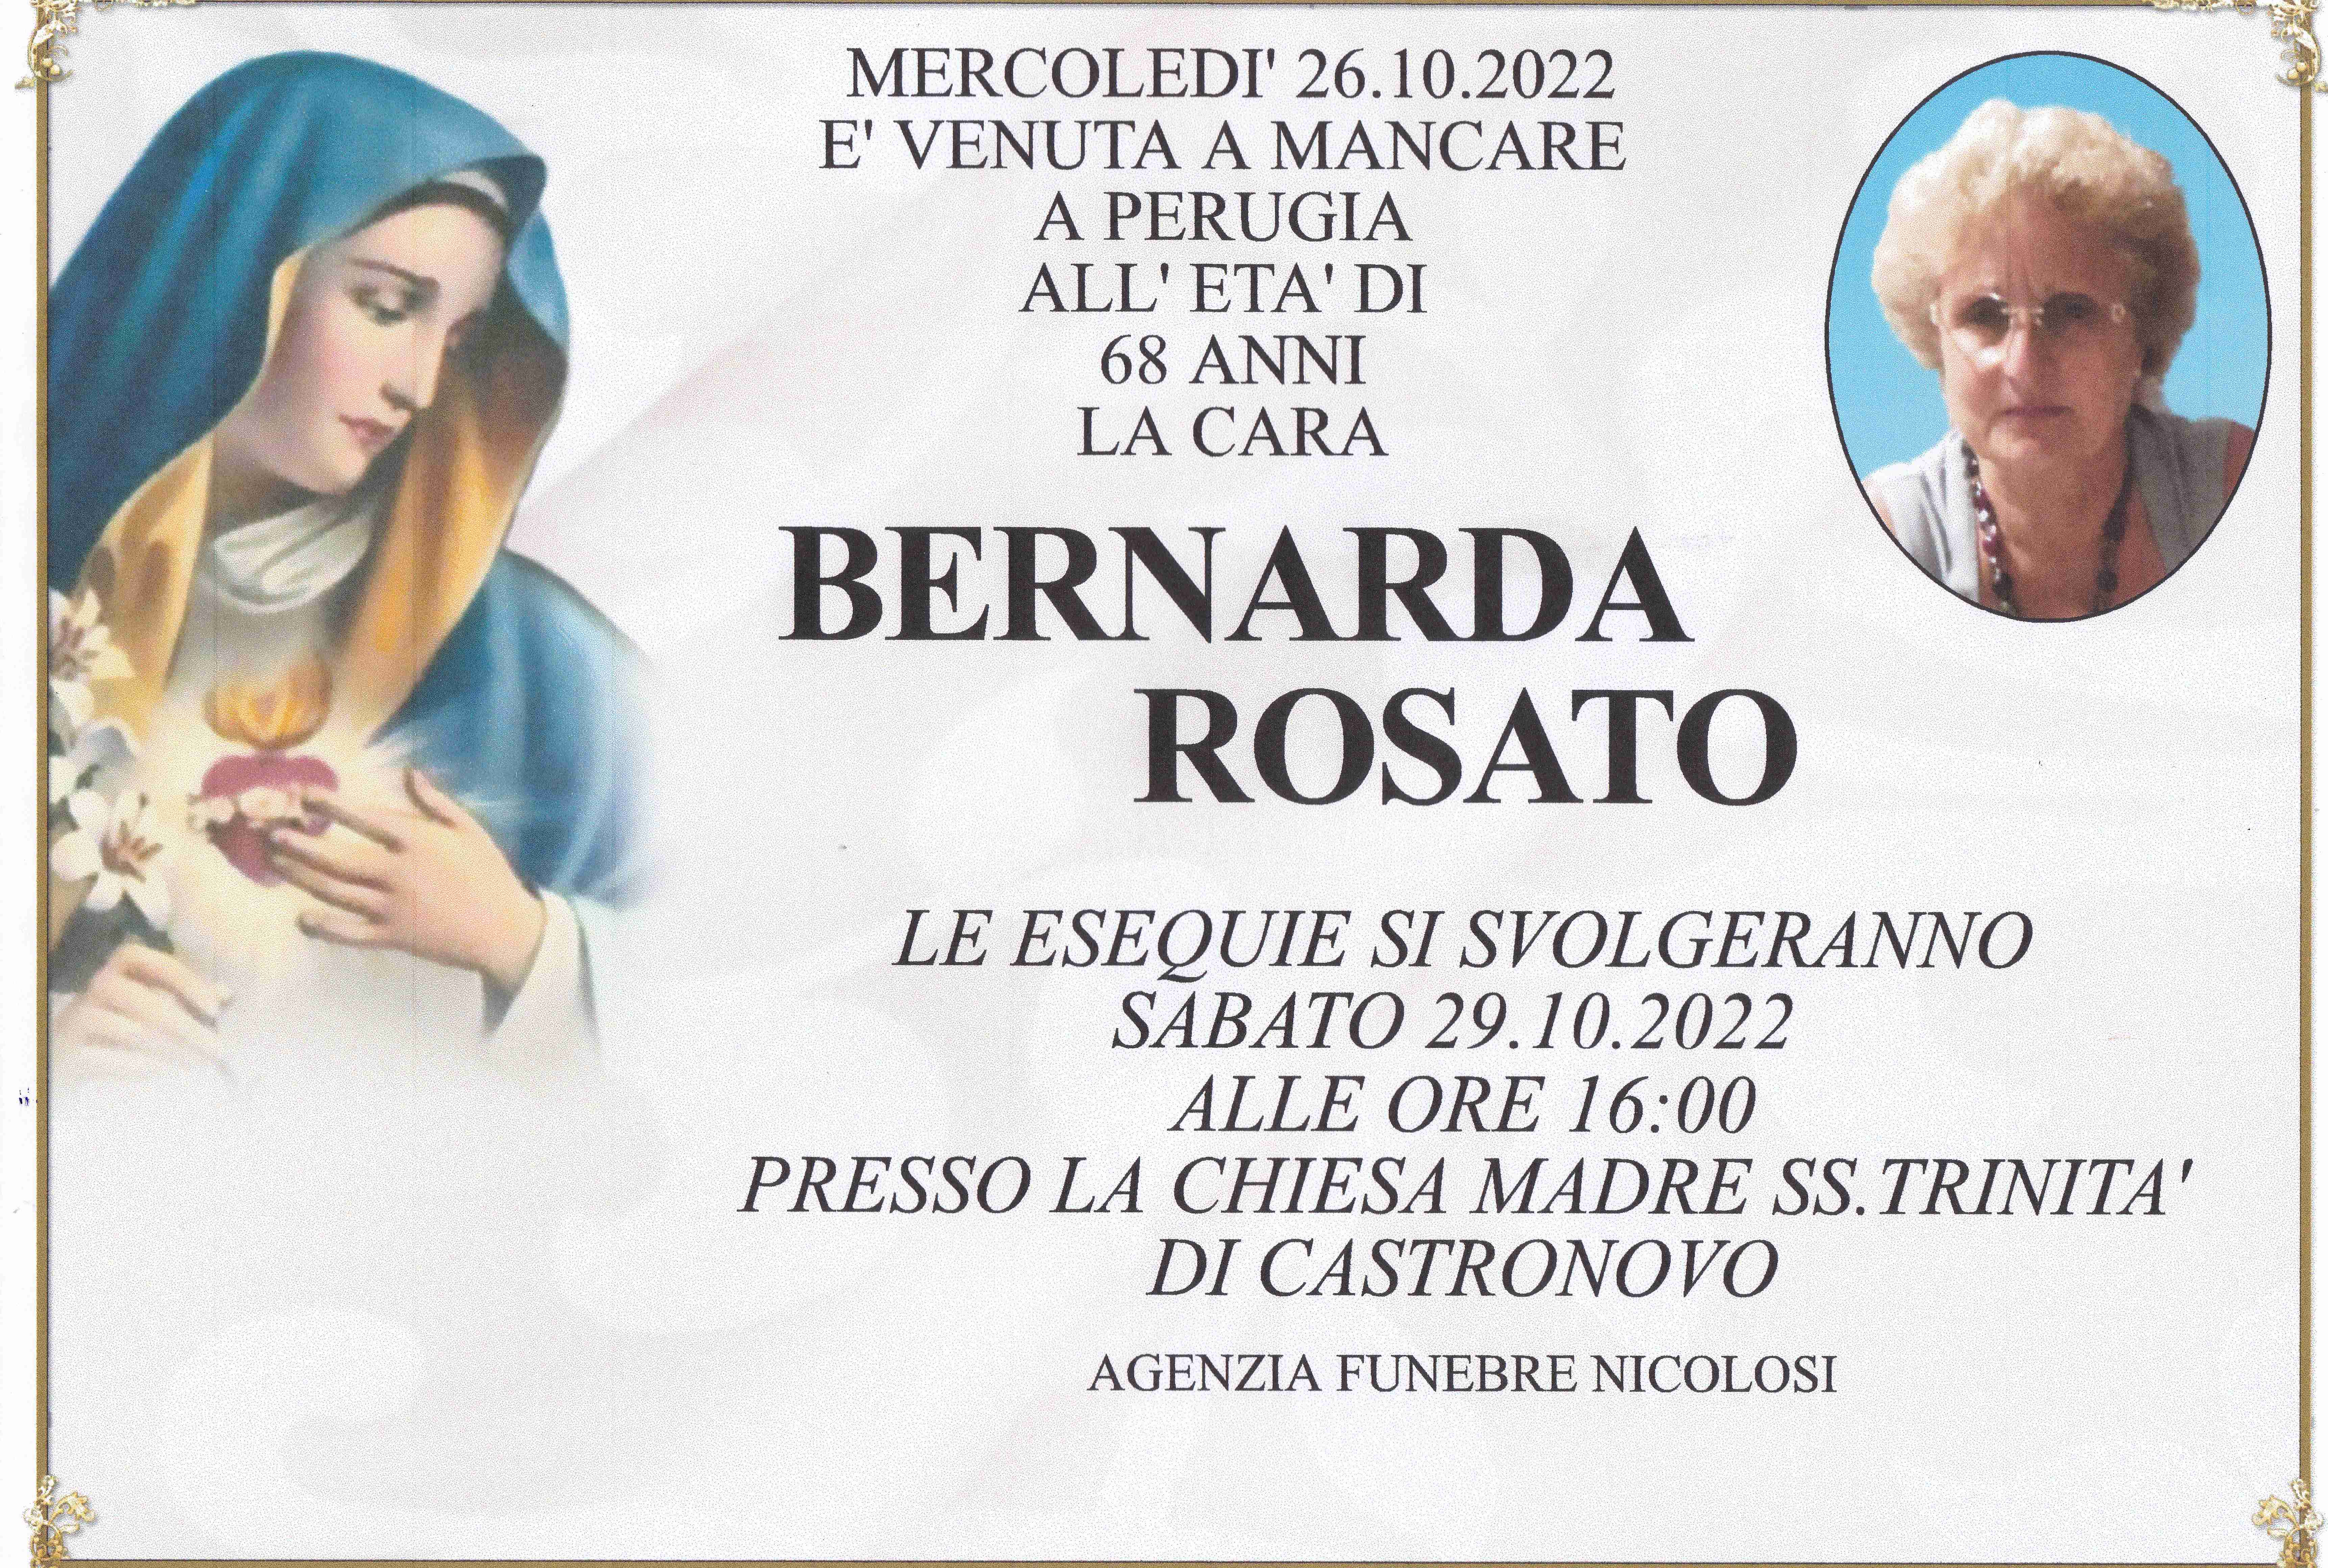 Bernarda Rosato